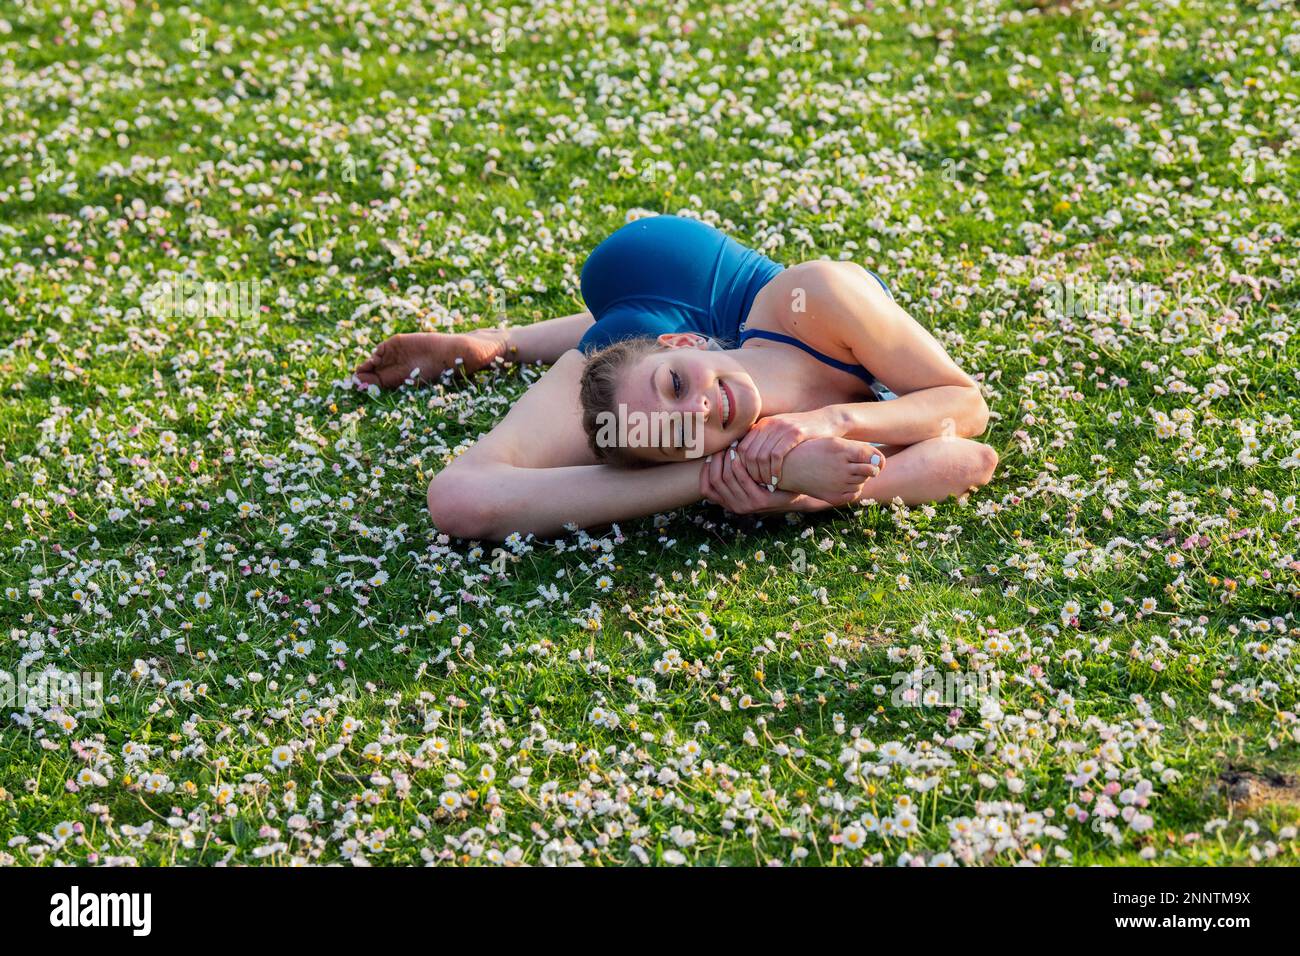 Contorsionniste couché sur une pelouse avec des pâquerettes, parc de Battle point, île de Bainbridge, Washington, États-Unis Banque D'Images